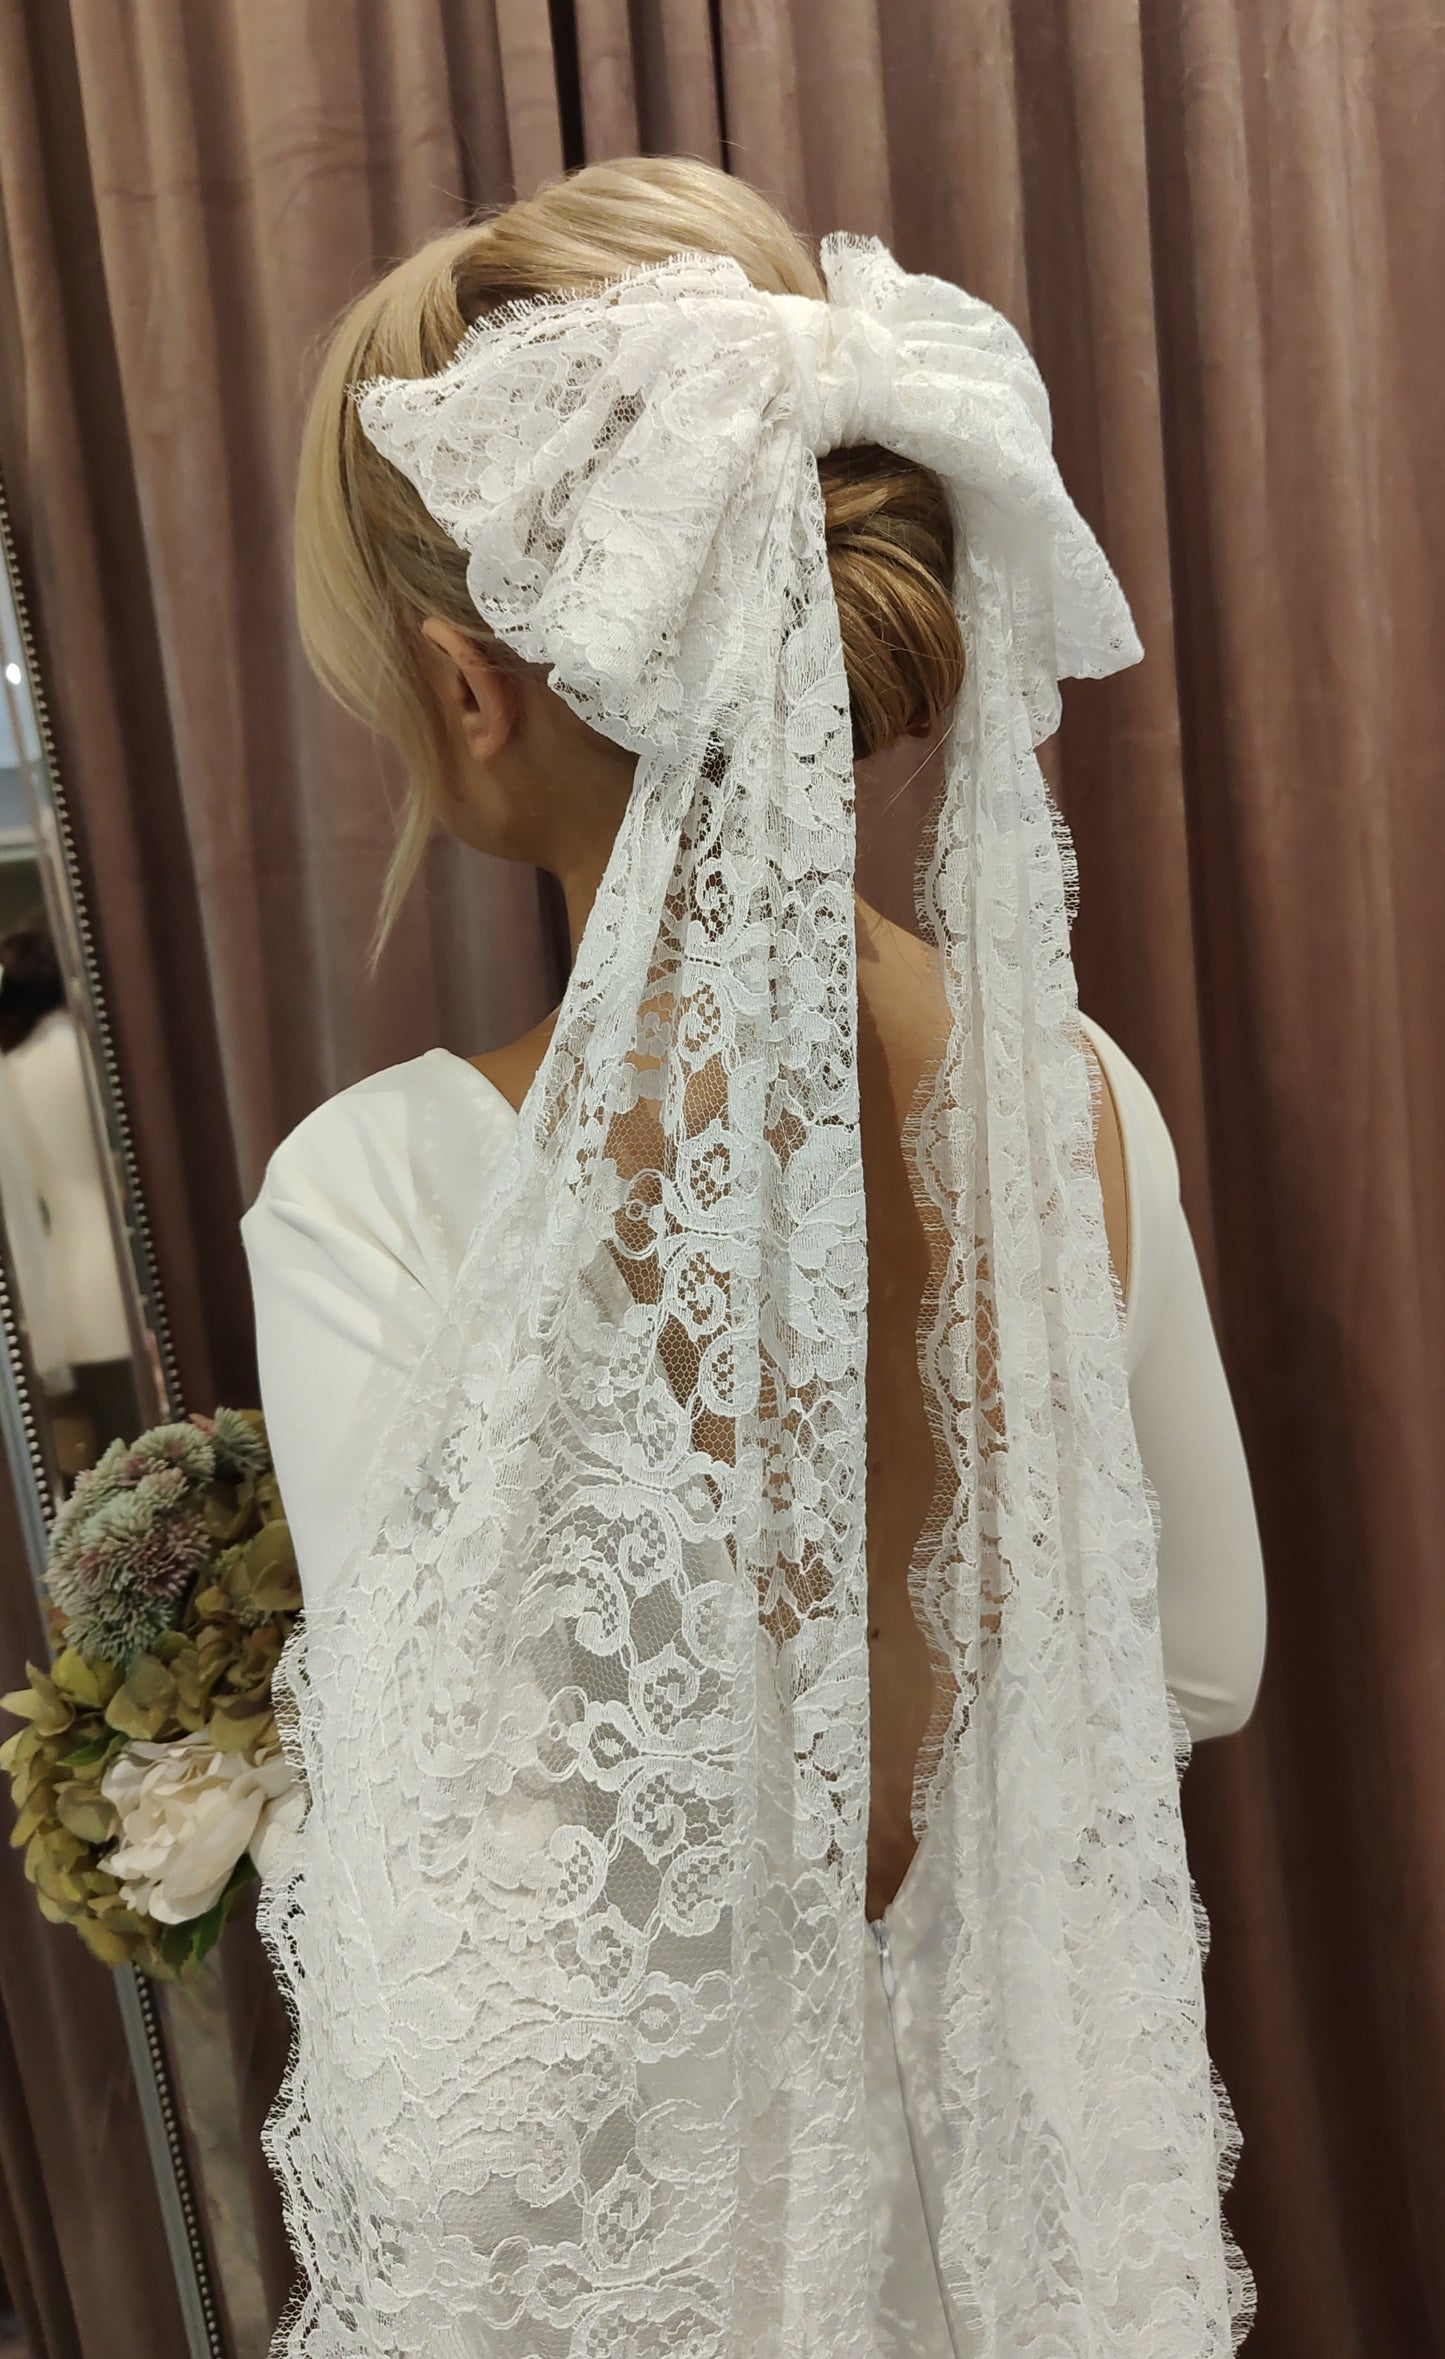 VICTORIA BOW - Vintage Lace Bridal Bow Veil